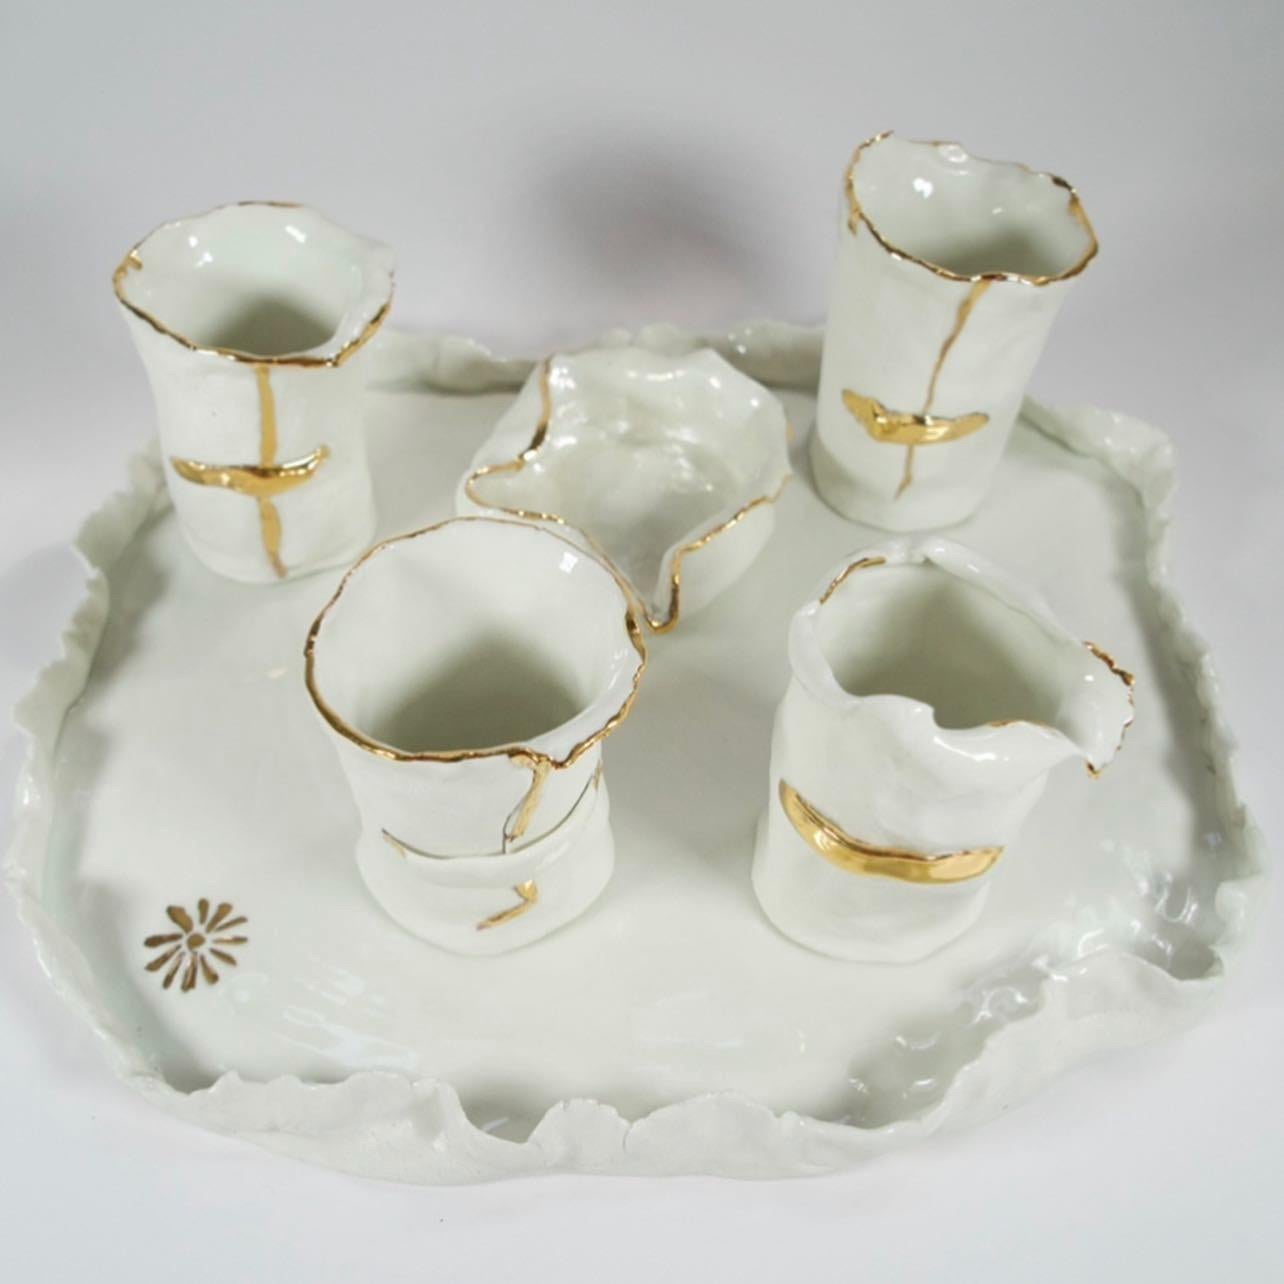 Ein ganz besonderes Kaffeeservice aus weißem Porzellan und Gold. Dieses Kunstwerk ist ein Unikat und von der Künstlerin Hania Jneid signiert. Sie kann dekorativ oder funktional sein, ist handgefertigt, handglasiert und goldglänzend. 